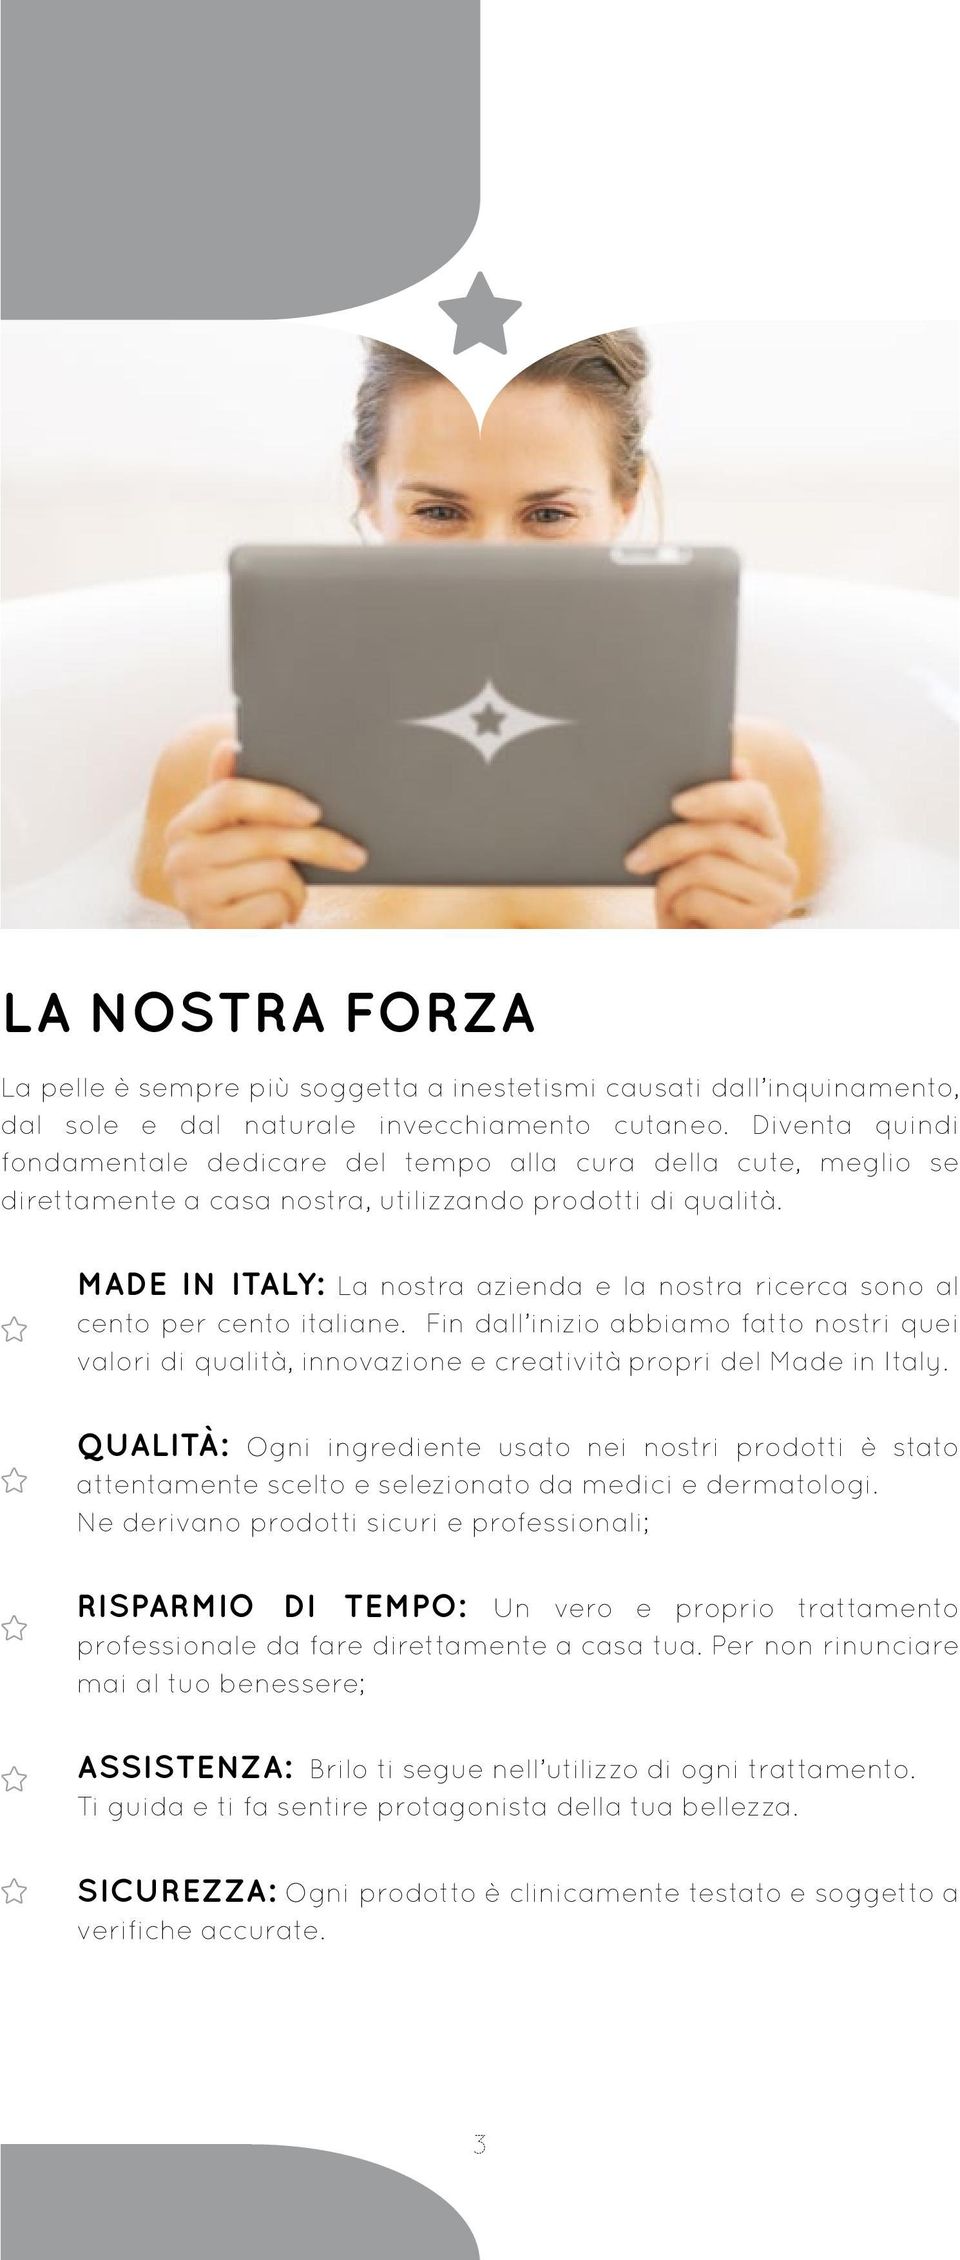 MADE IN ITALY: La nostra azienda e la nostra ricerca sono al cento per cento italiane. Fin dall inizio abbiamo fatto nostri quei valori di qualità, innovazione e creatività propri del Made in Italy.